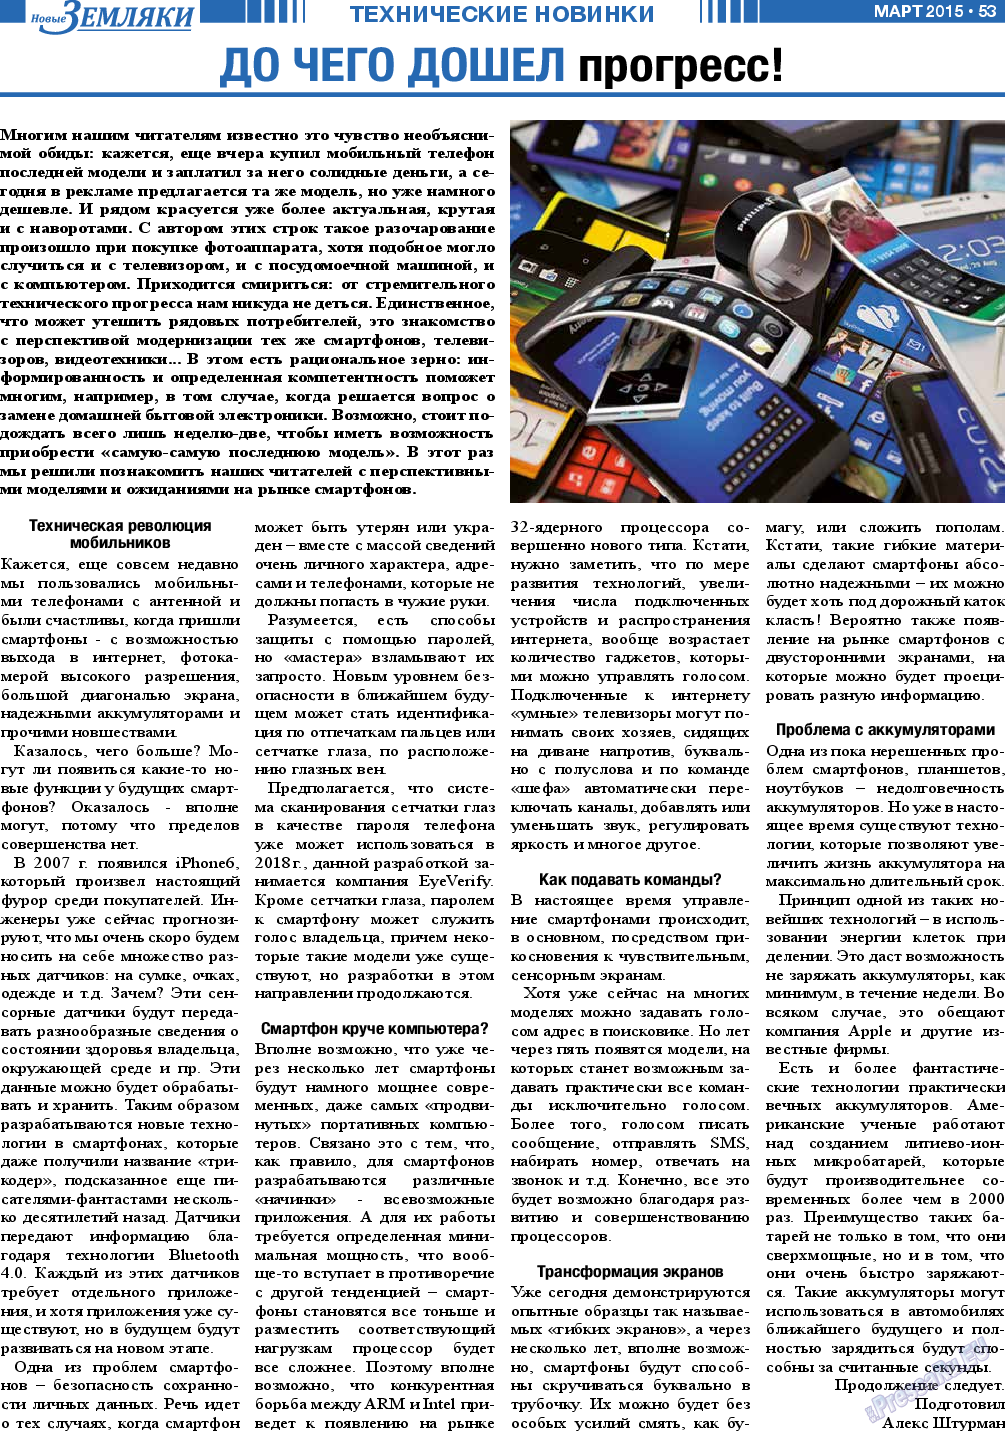 Новые Земляки (газета). 2015 год, номер 3, стр. 53